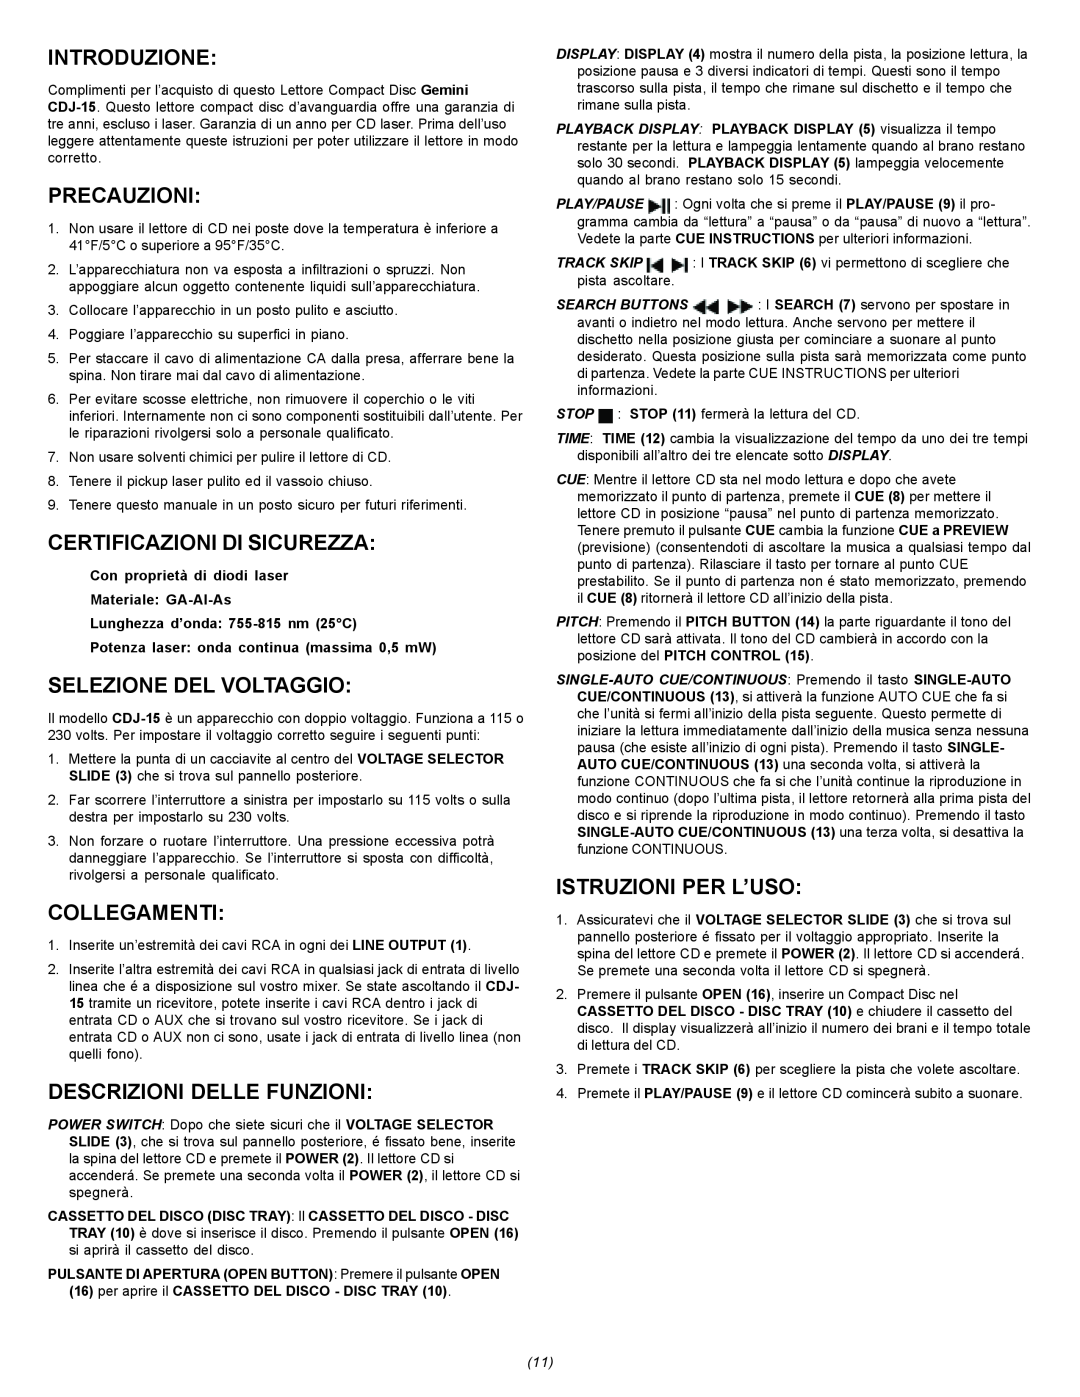 Gemini CDJ-15 manual Introduzione, Precauzioni, Certificazioni Di Sicurezza, Selezione Del Voltaggio, Collegamenti 